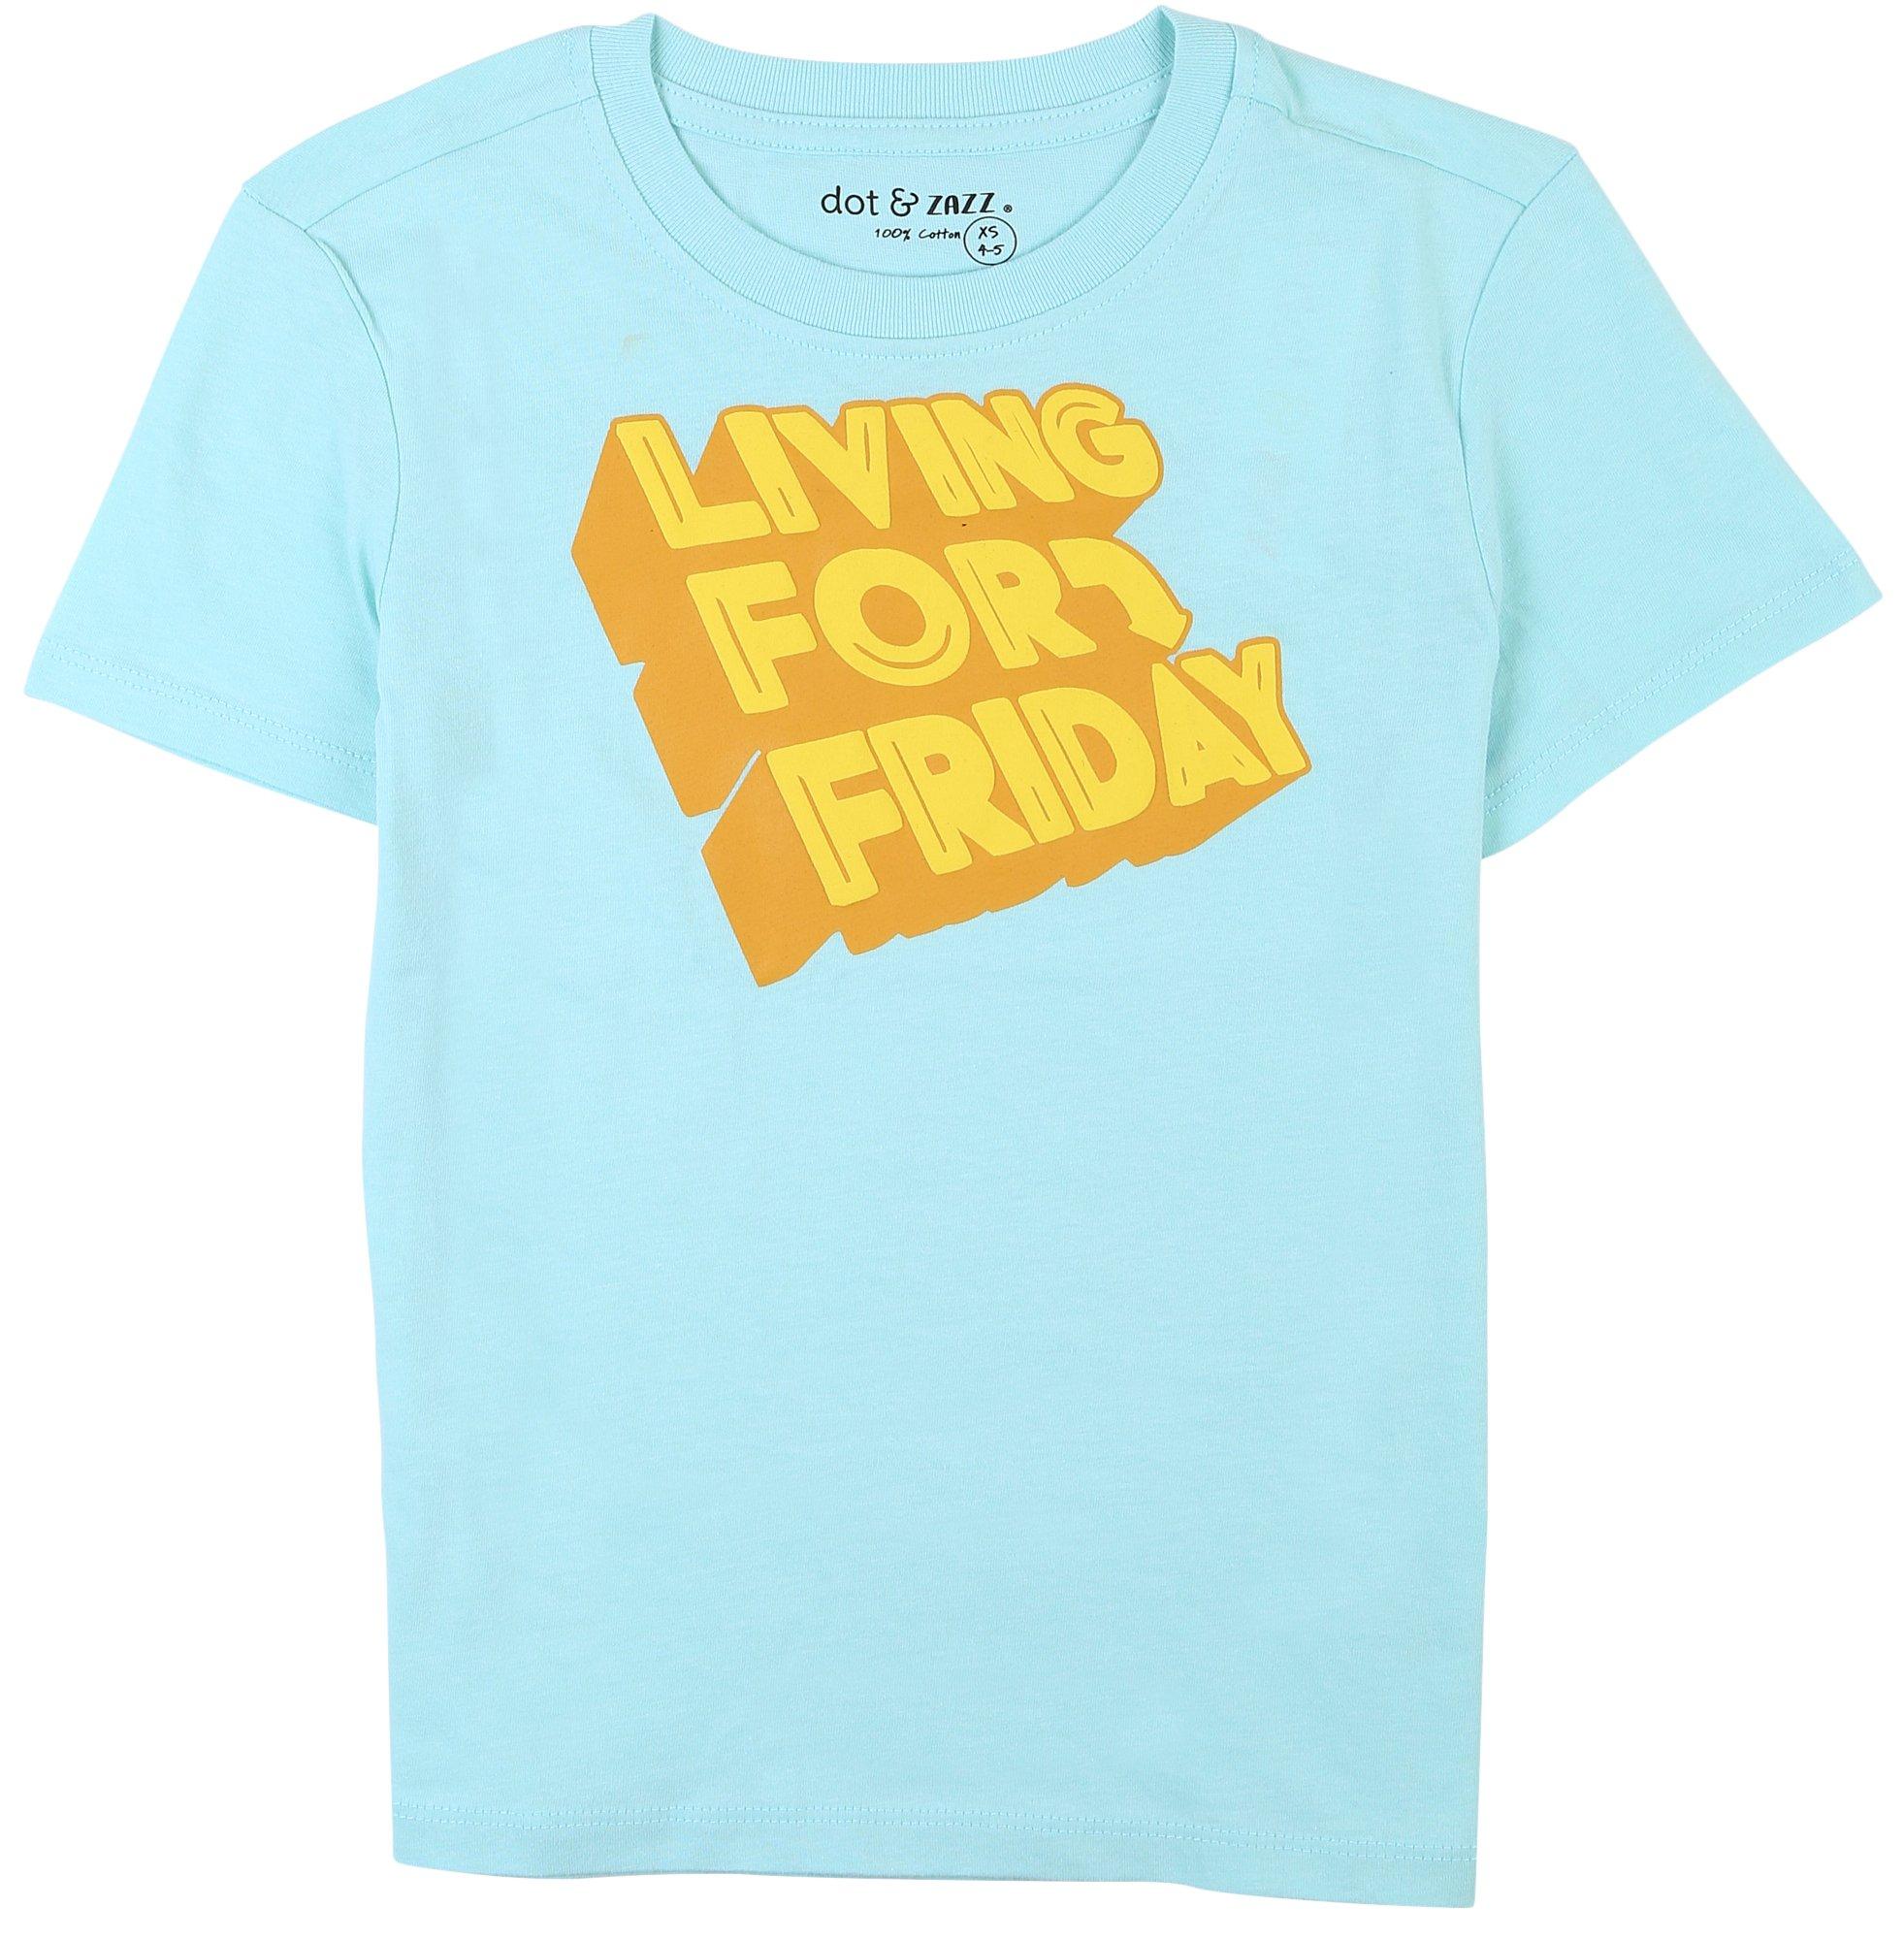 DOT & ZAZZ Little Boys Living For Friday T-Shirt